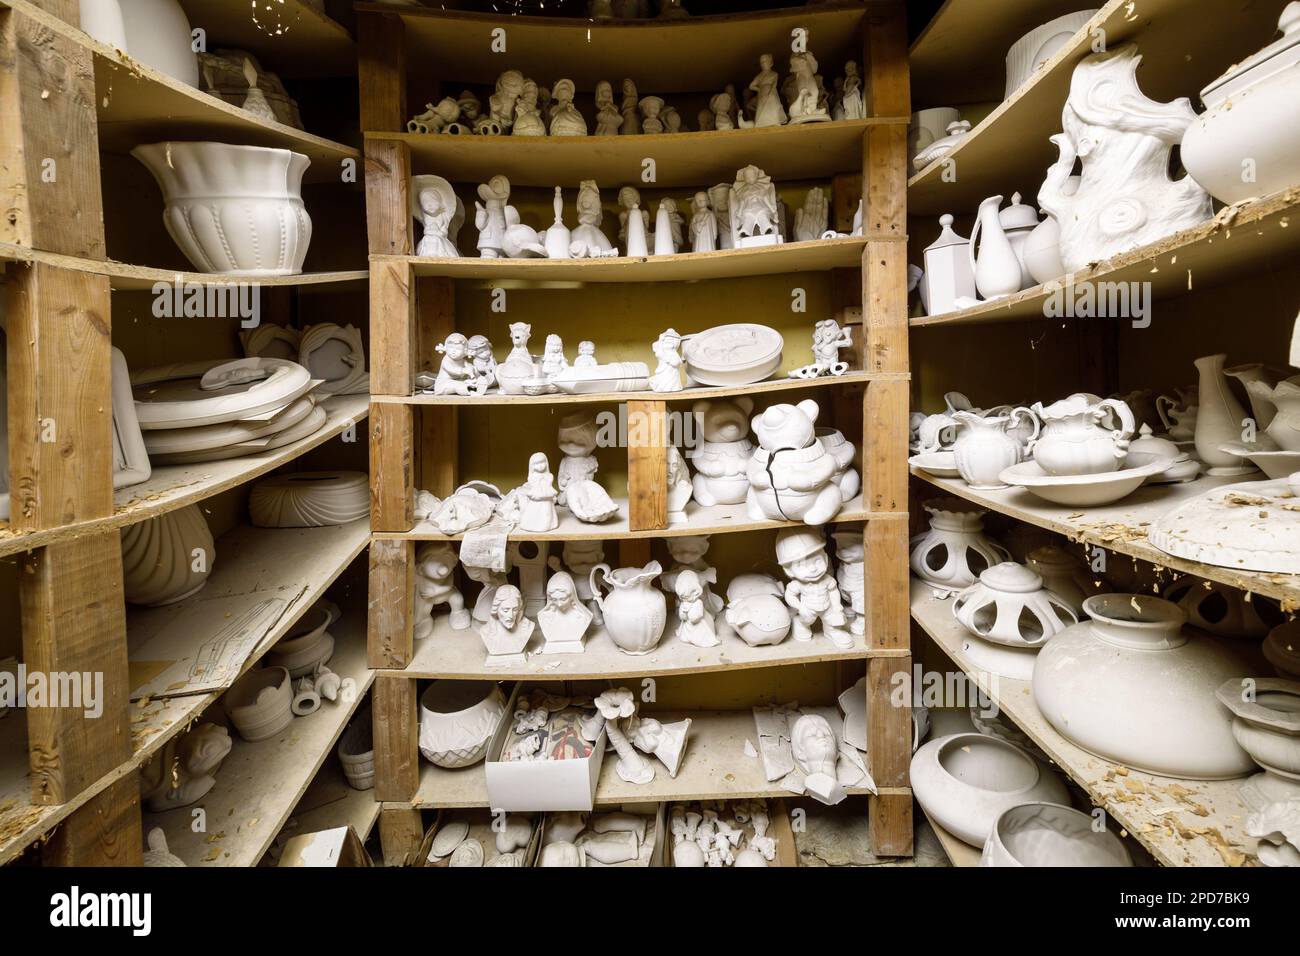 Dutzende unlackierter Keramikfiguren auf Regalen. Stockfoto